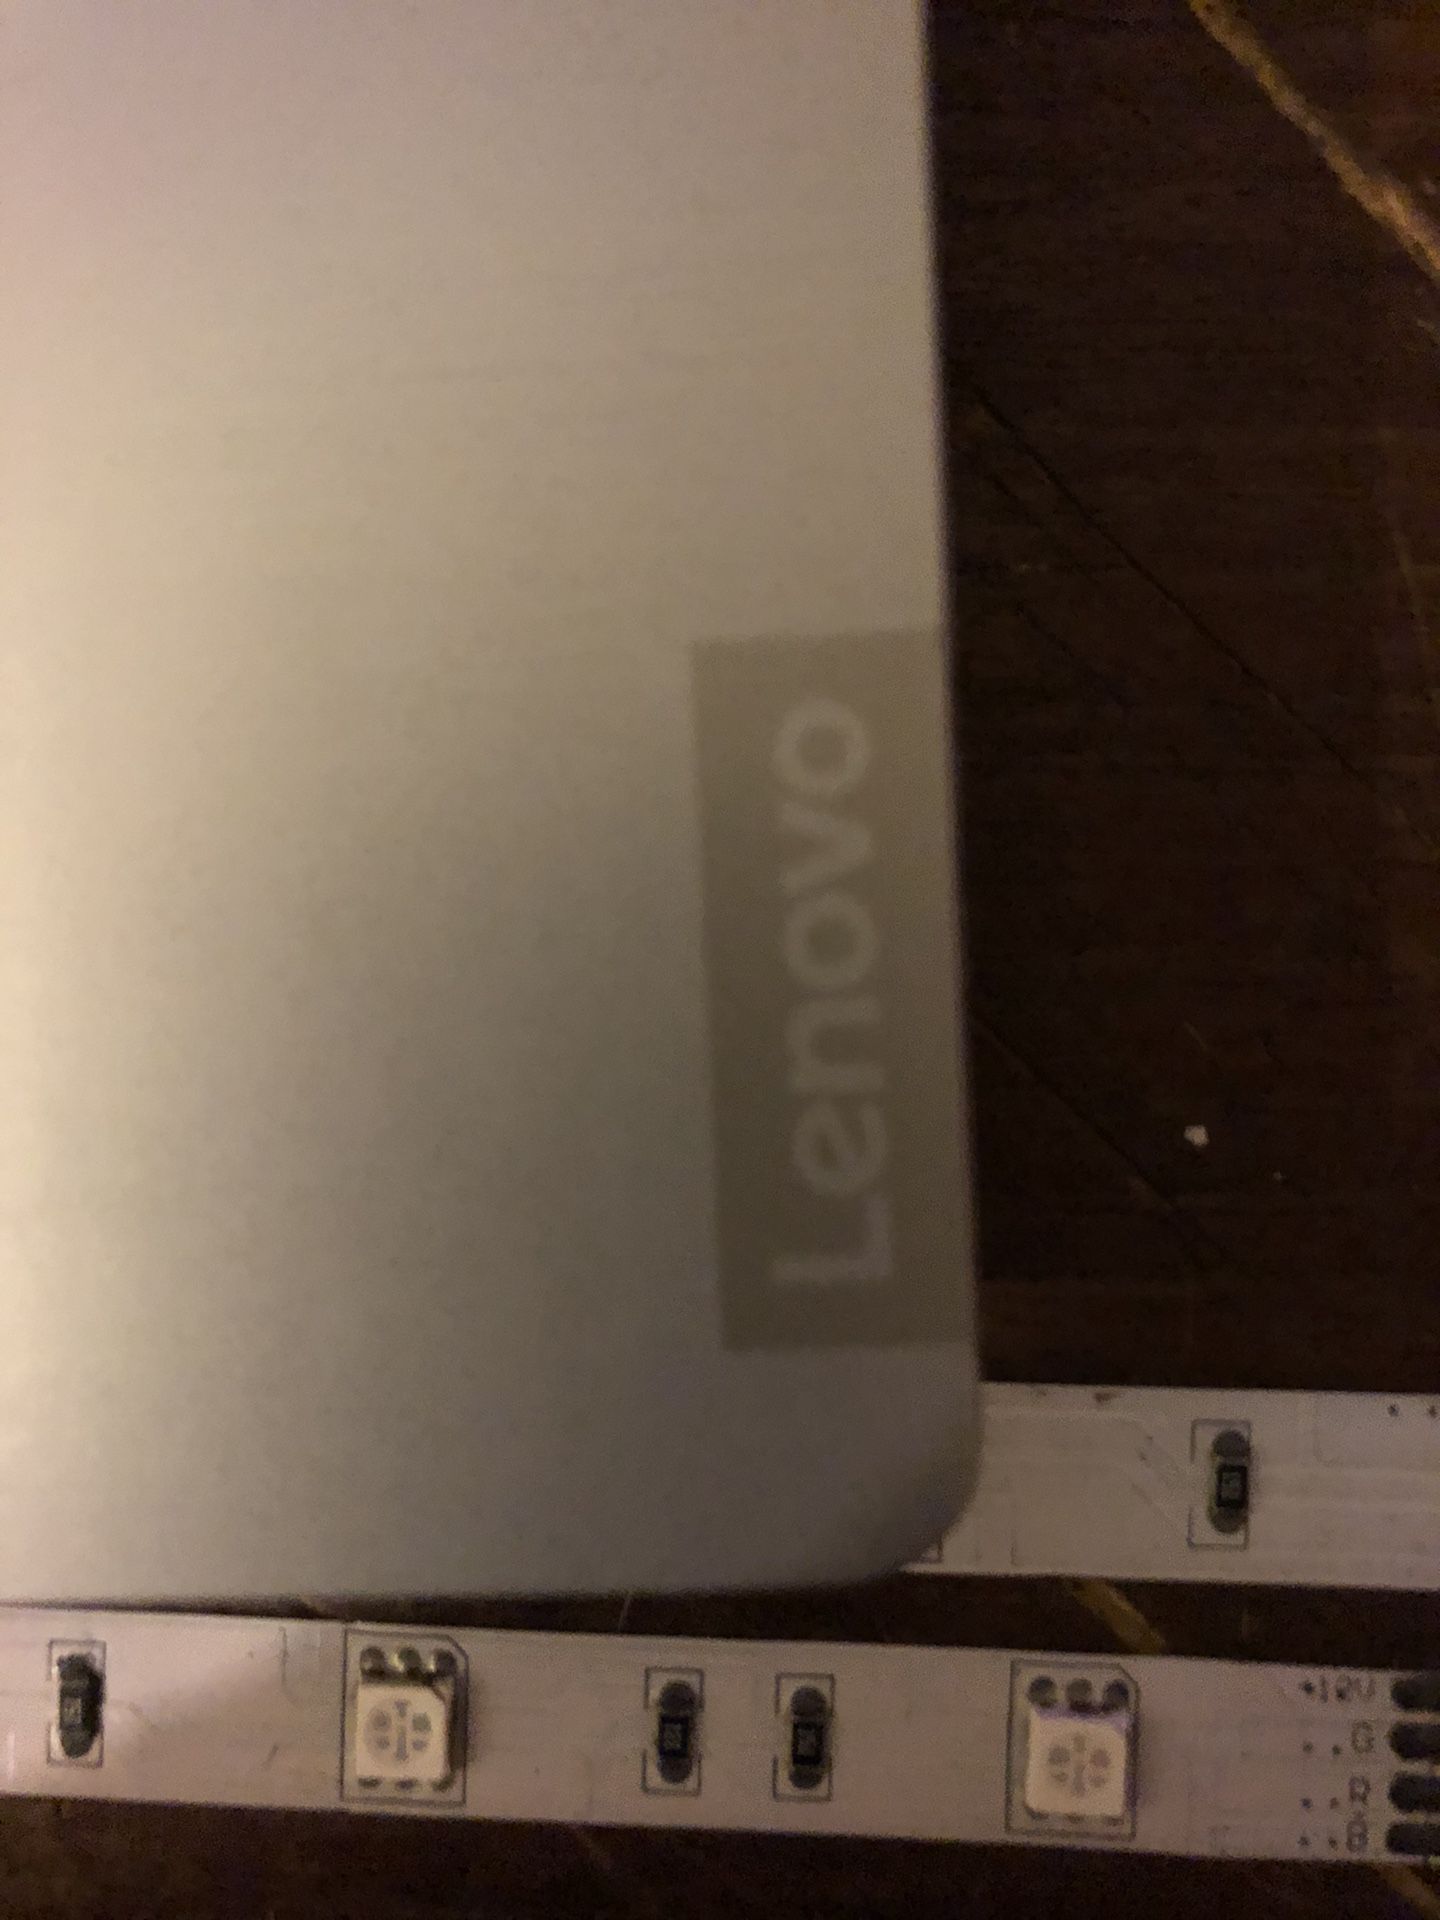 Lenovo Ideapad S145 laptop